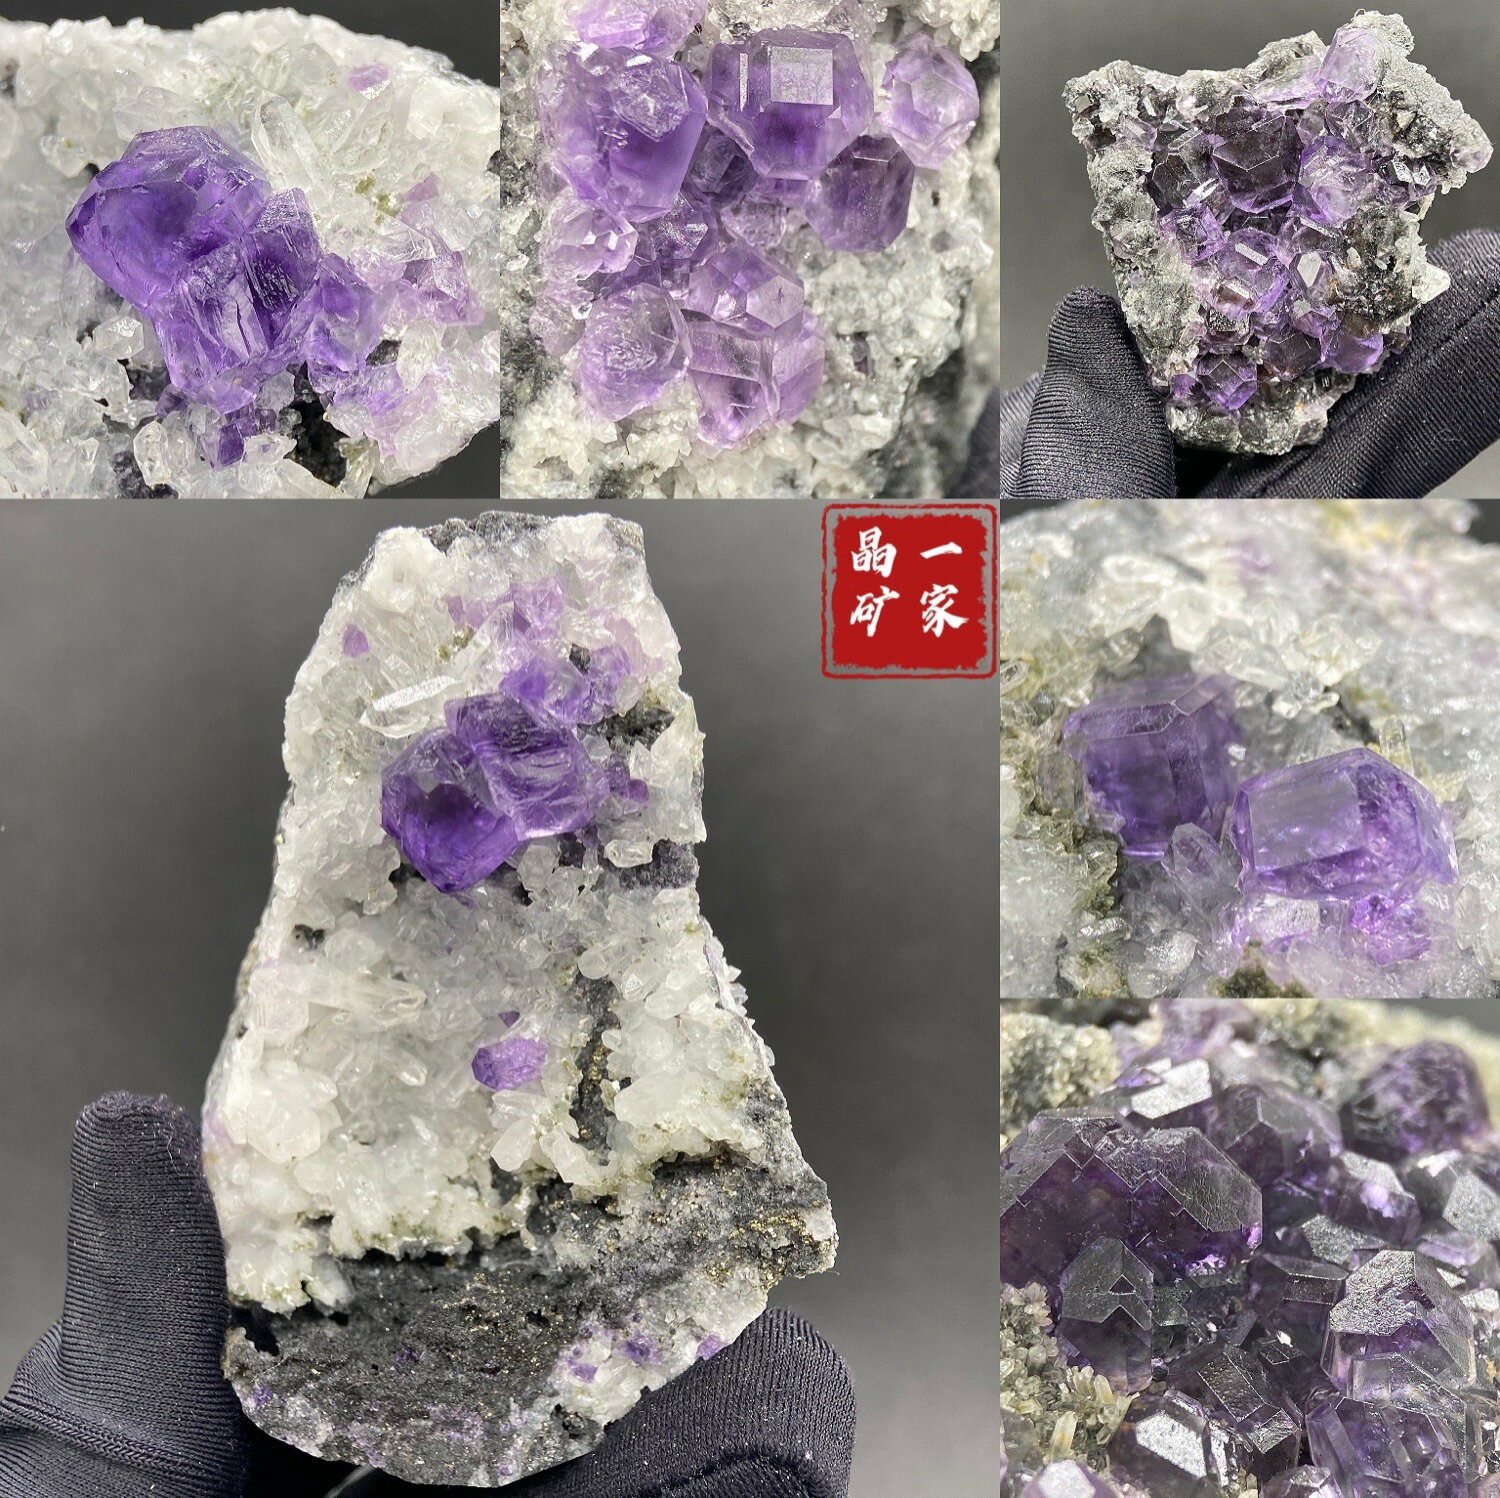 福建天然紫螢石水晶共生礦物晶體礦石標本觀賞石教學科普收藏擺件